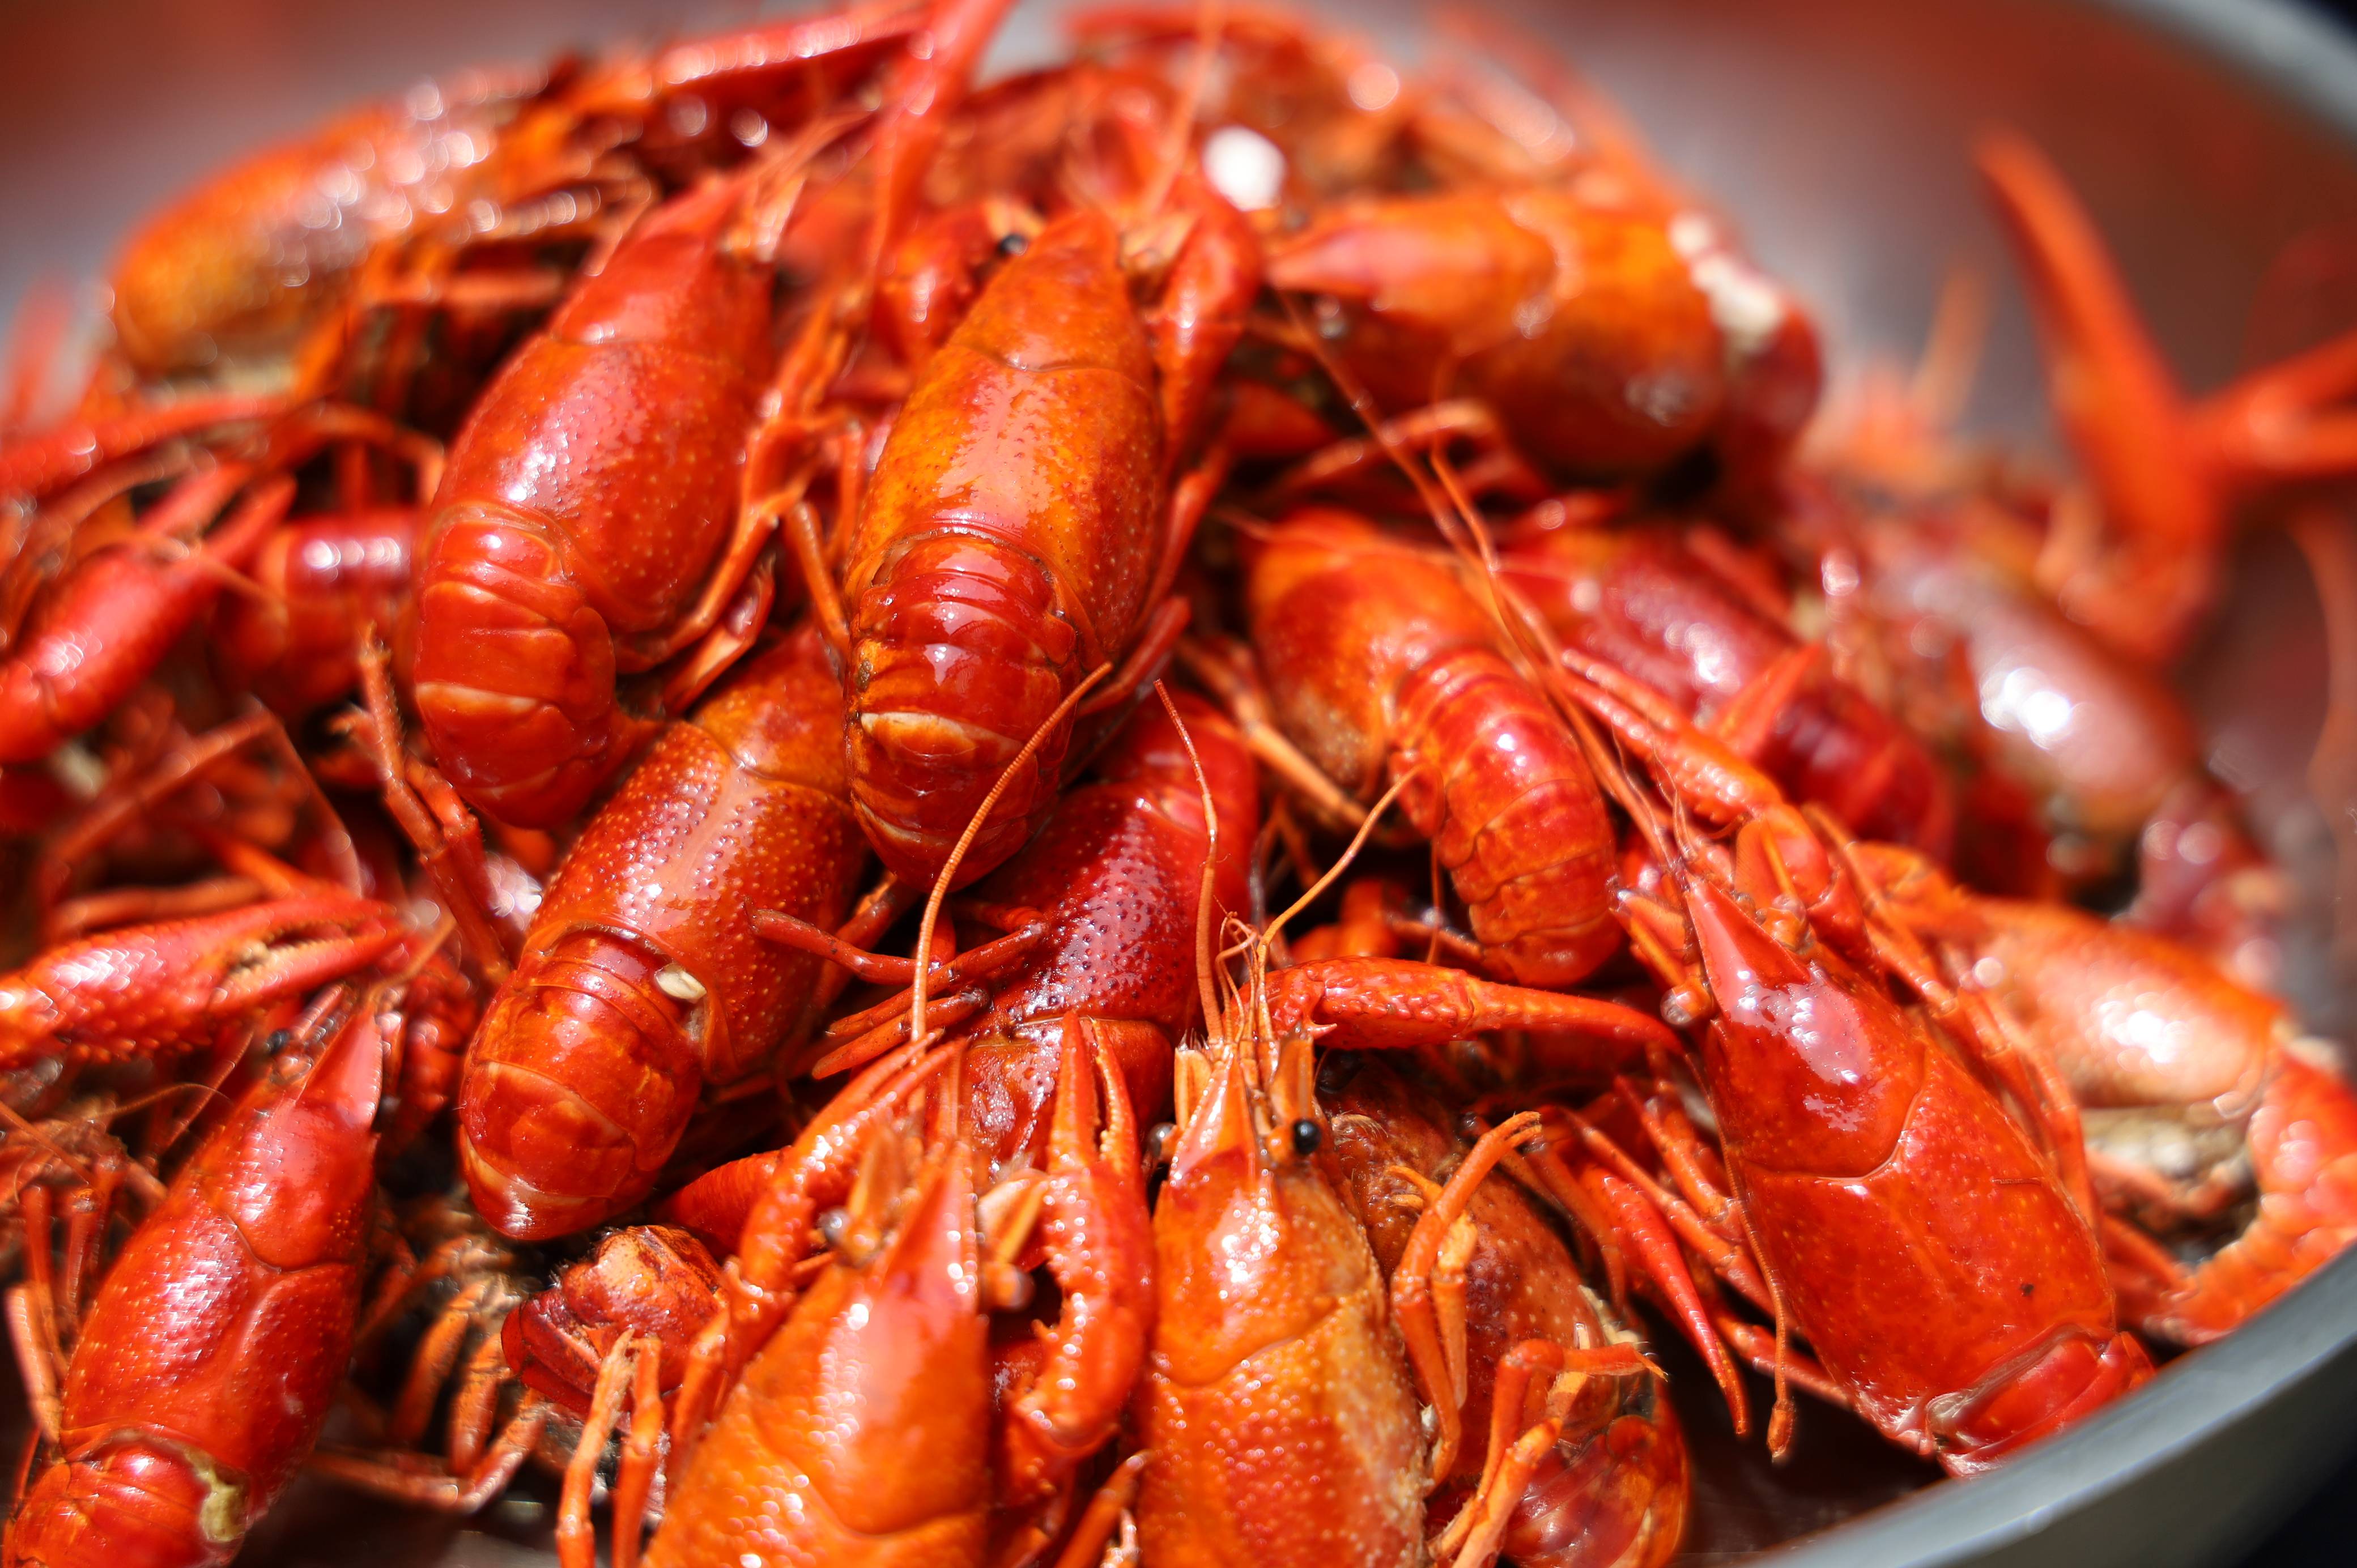 层次丰富的味道透彻的渗透进每一只小龙虾的肉里,使得虾肉吃起来更加